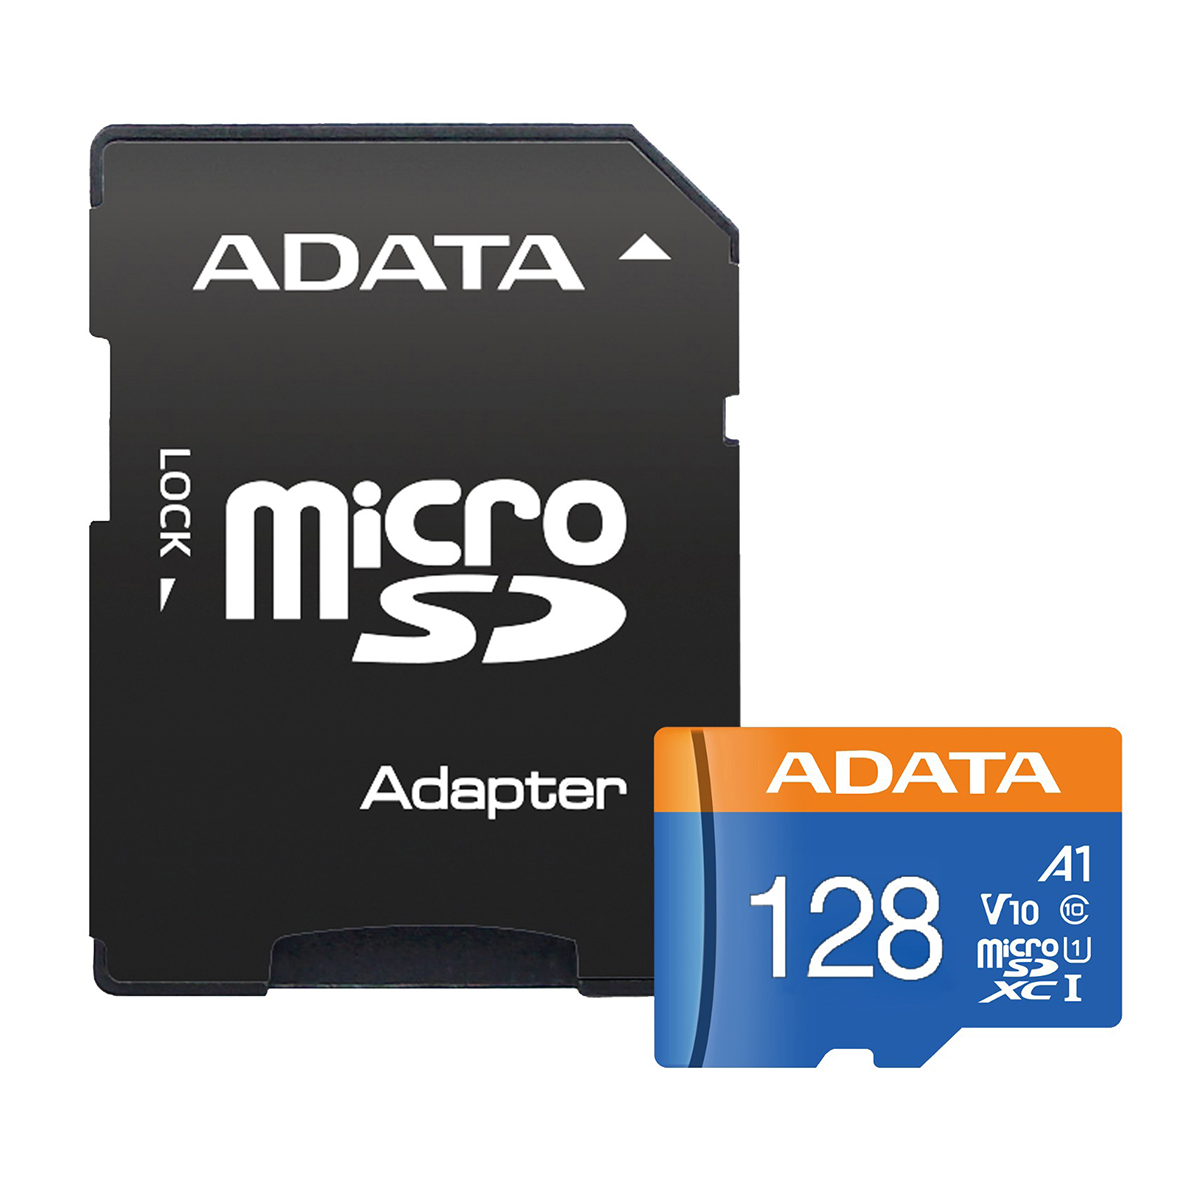 کارت حافظه microSDXC ای دیتا مدل Premier V10 A1 کلاس 10 استاندارد UHS-I سرعت 100MBps ظرفیت 128 گیگابایت به همراه آداپتور-آبی